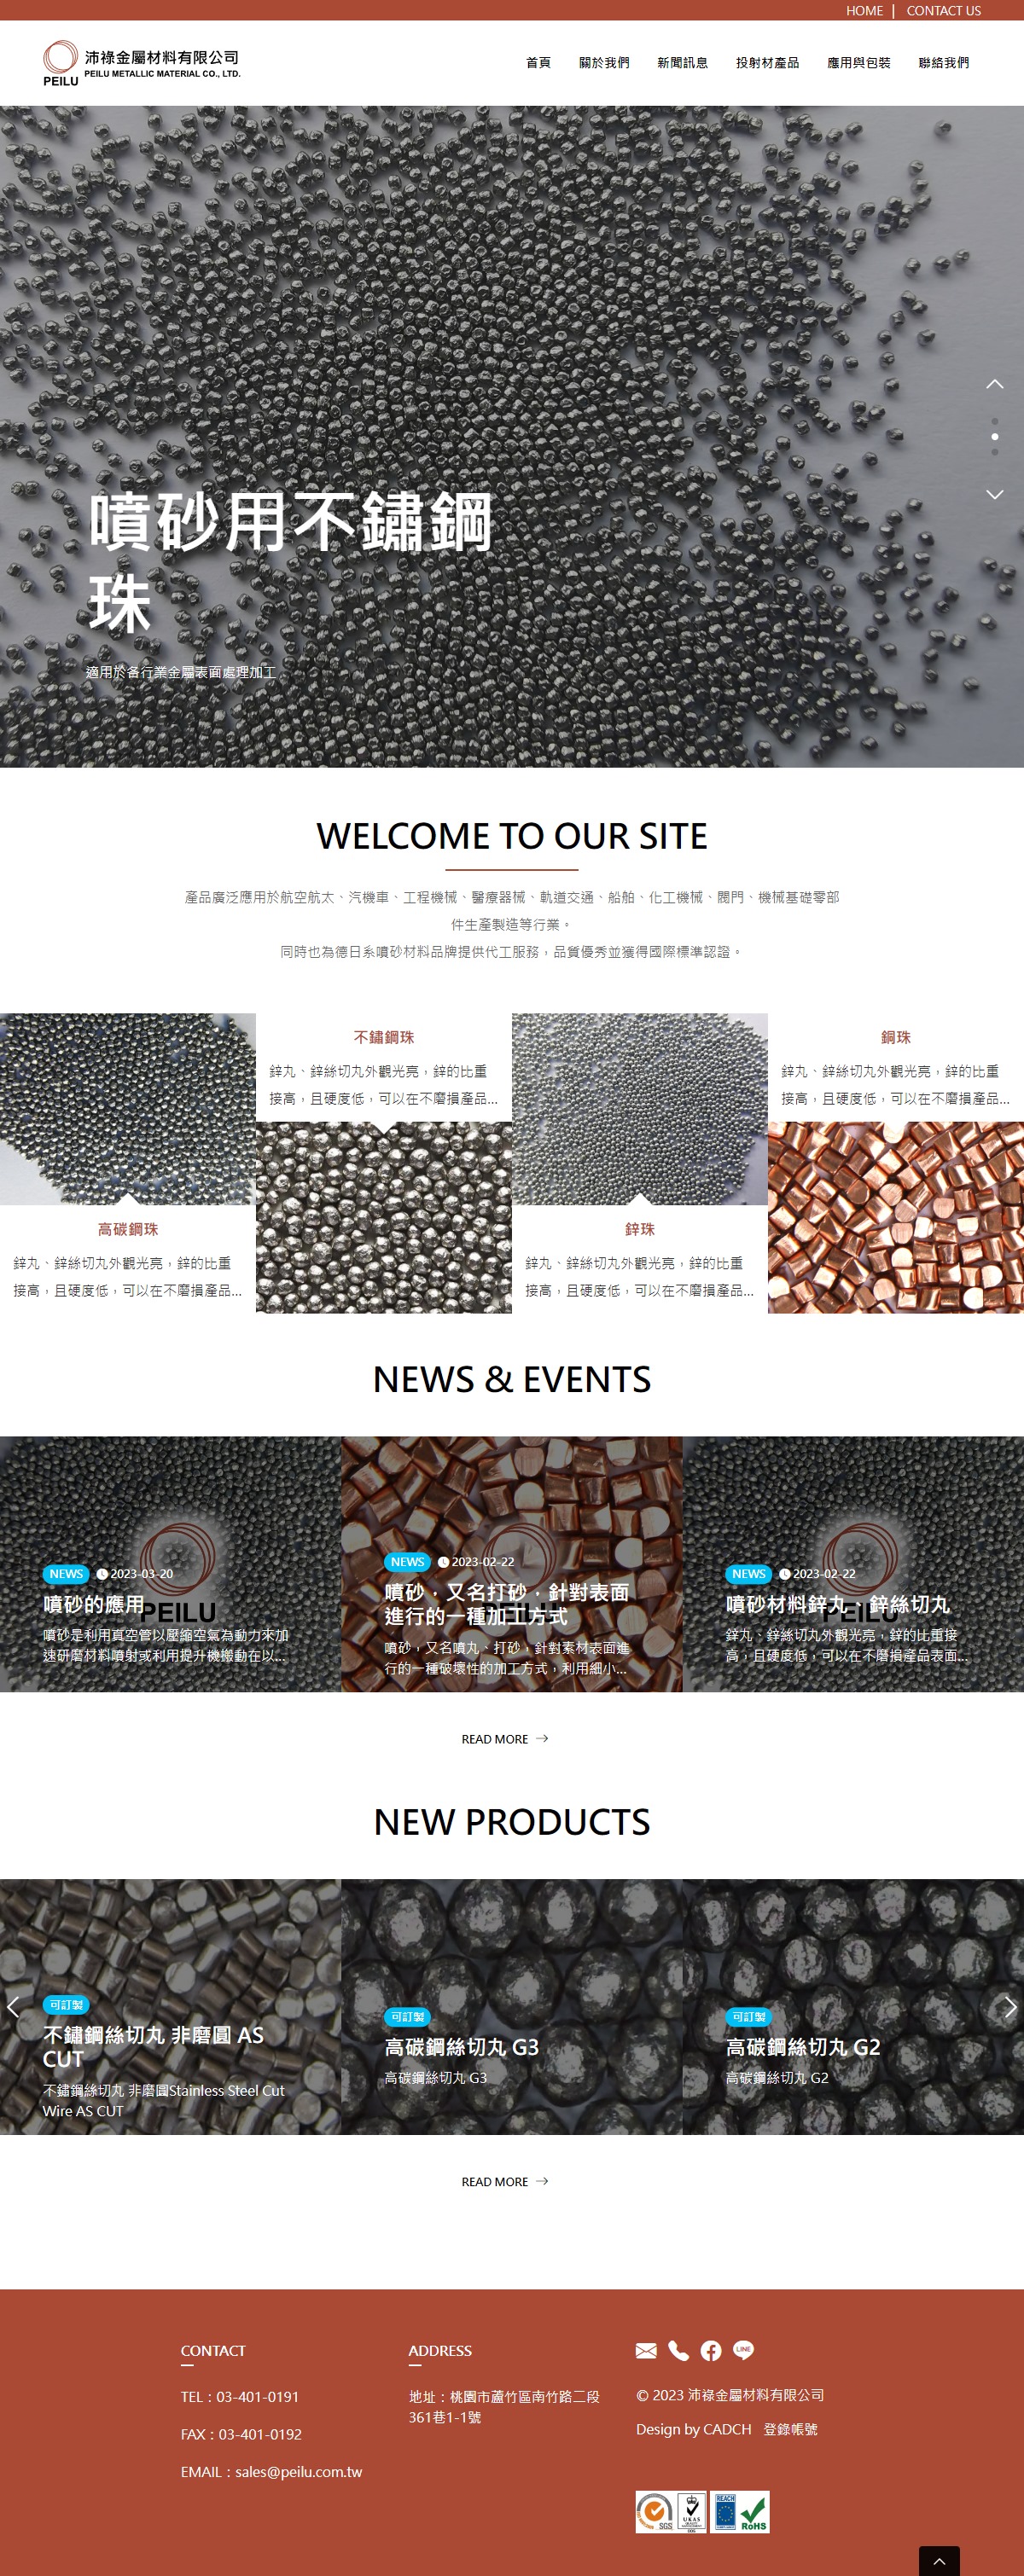 噴砂材料製造商網頁設計示意圖